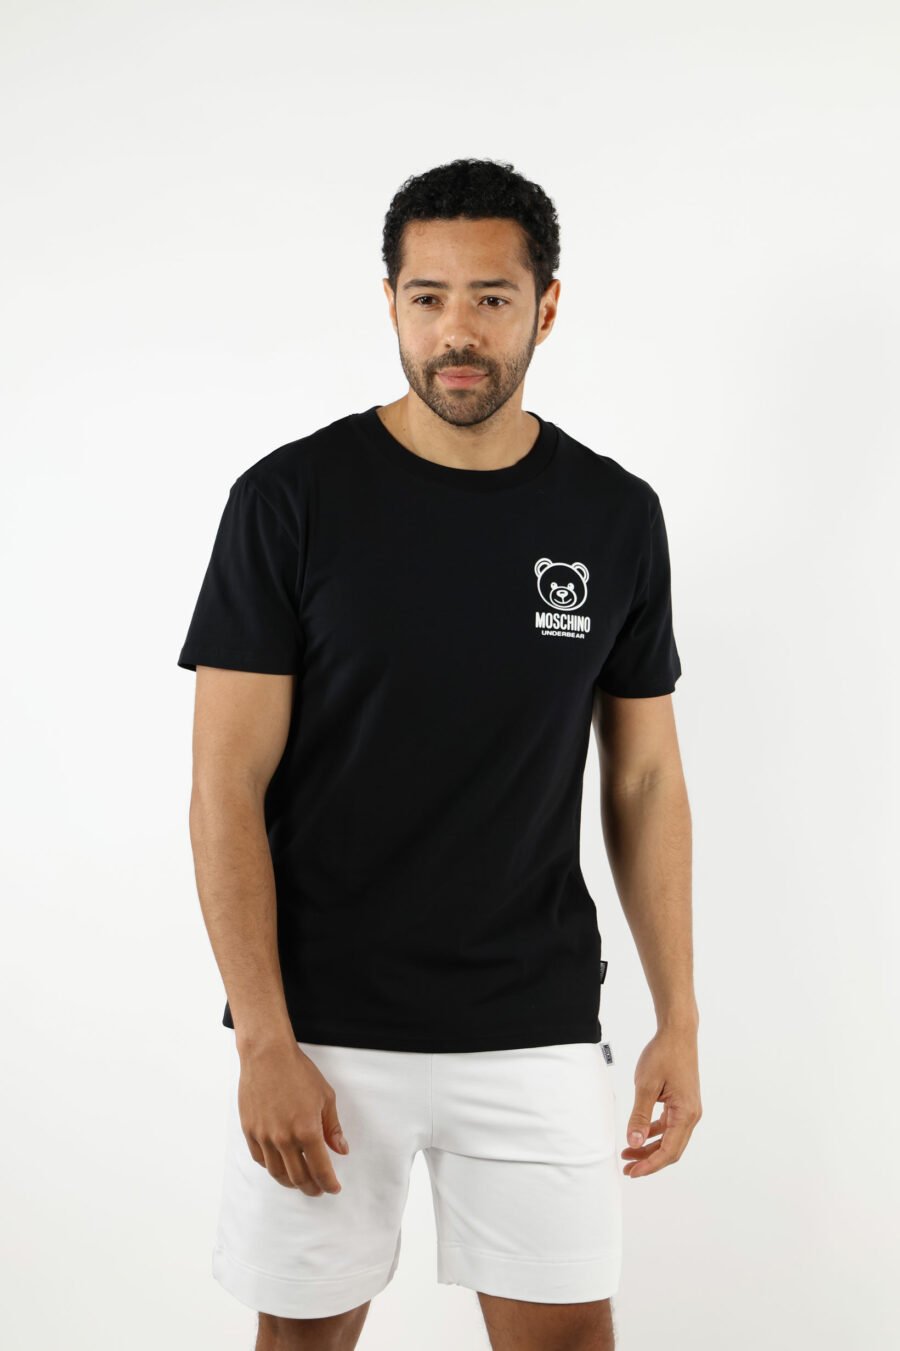 T-shirt schwarz mit Mini-Bär "underbear" in weißem Gummi - 111014